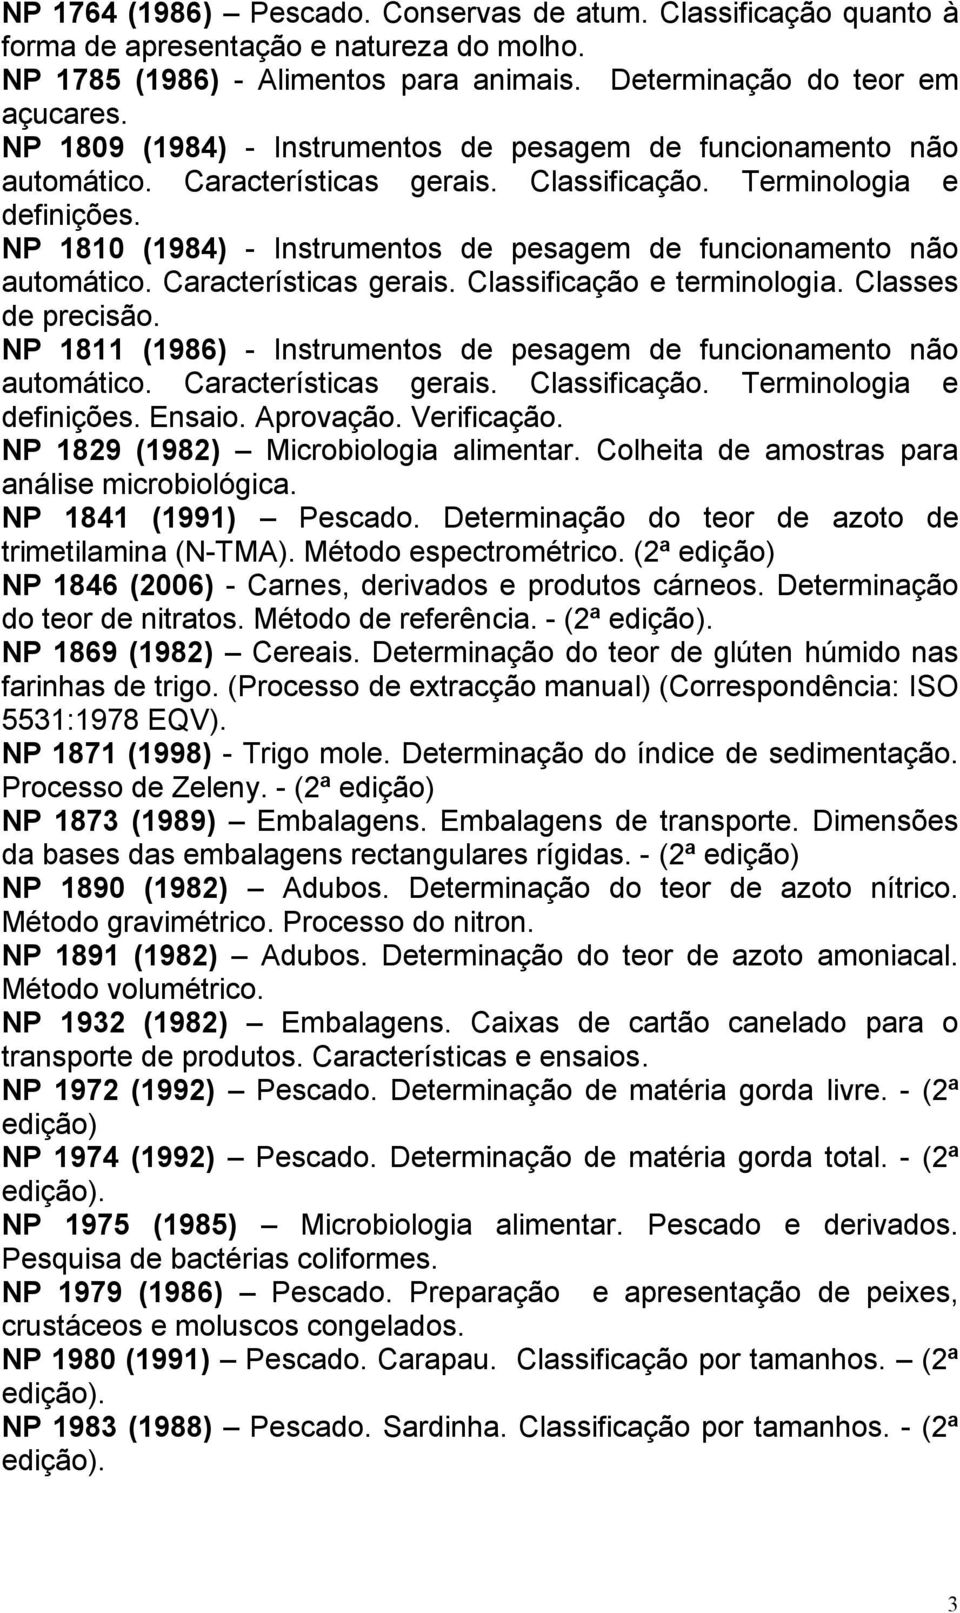 NP 1810 (1984) - Instrumentos de pesagem de funcionamento não automático. Características gerais. Classificação e terminologia. Classes de precisão.